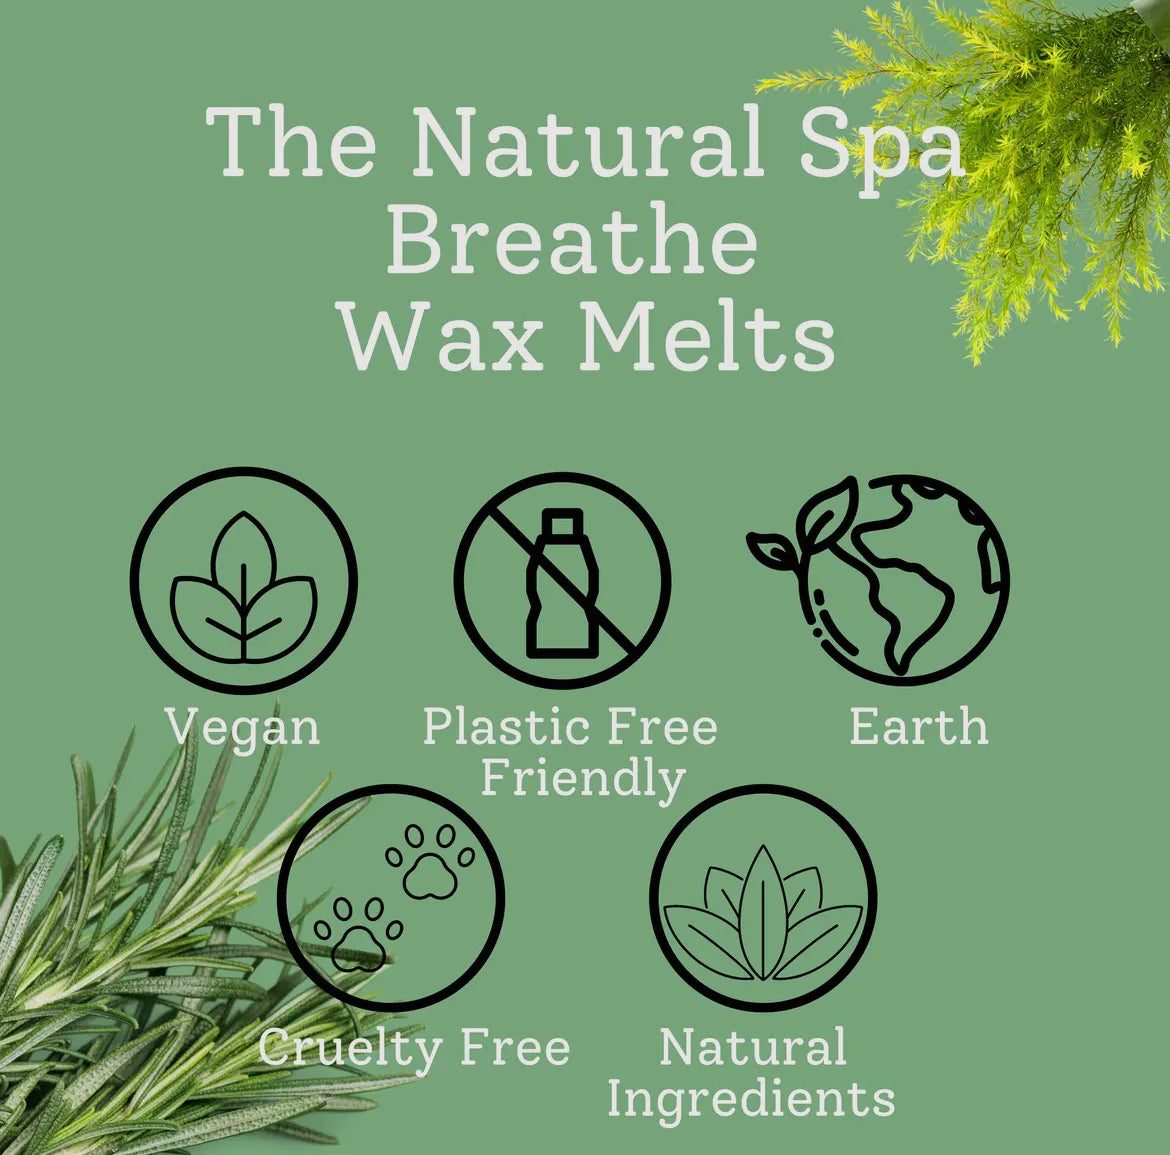 The Natural Spa Wax Melts